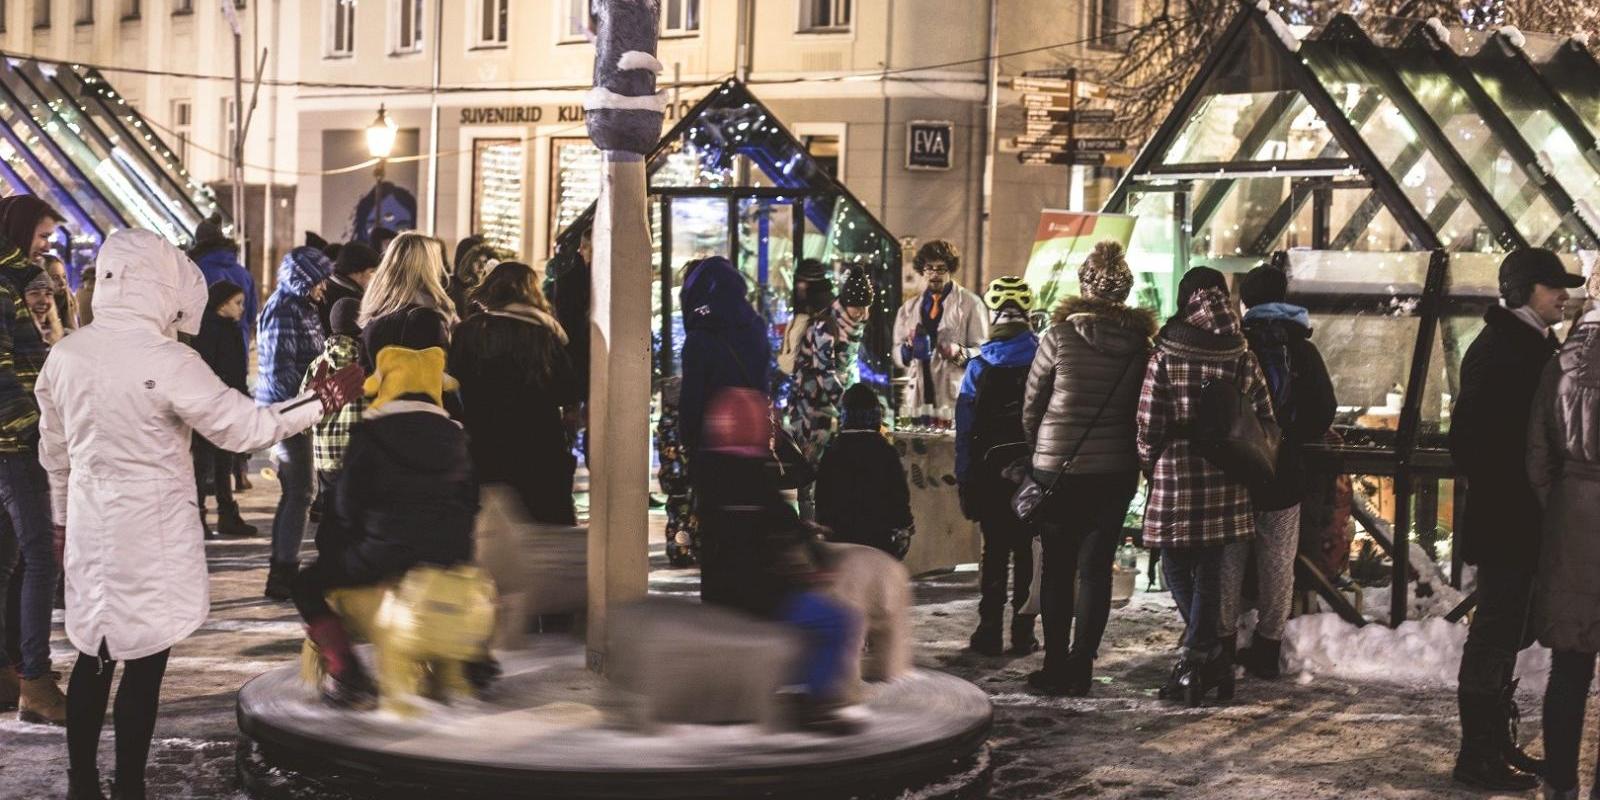 Tradicionālais Ziemassvētku gadatirgus notiek uz Küüni ielas, Tartu tirgus ēkas apkārtnē. Skaisti izrotātajā Tartu pilsētas centrā mēs gaidām, aptuven